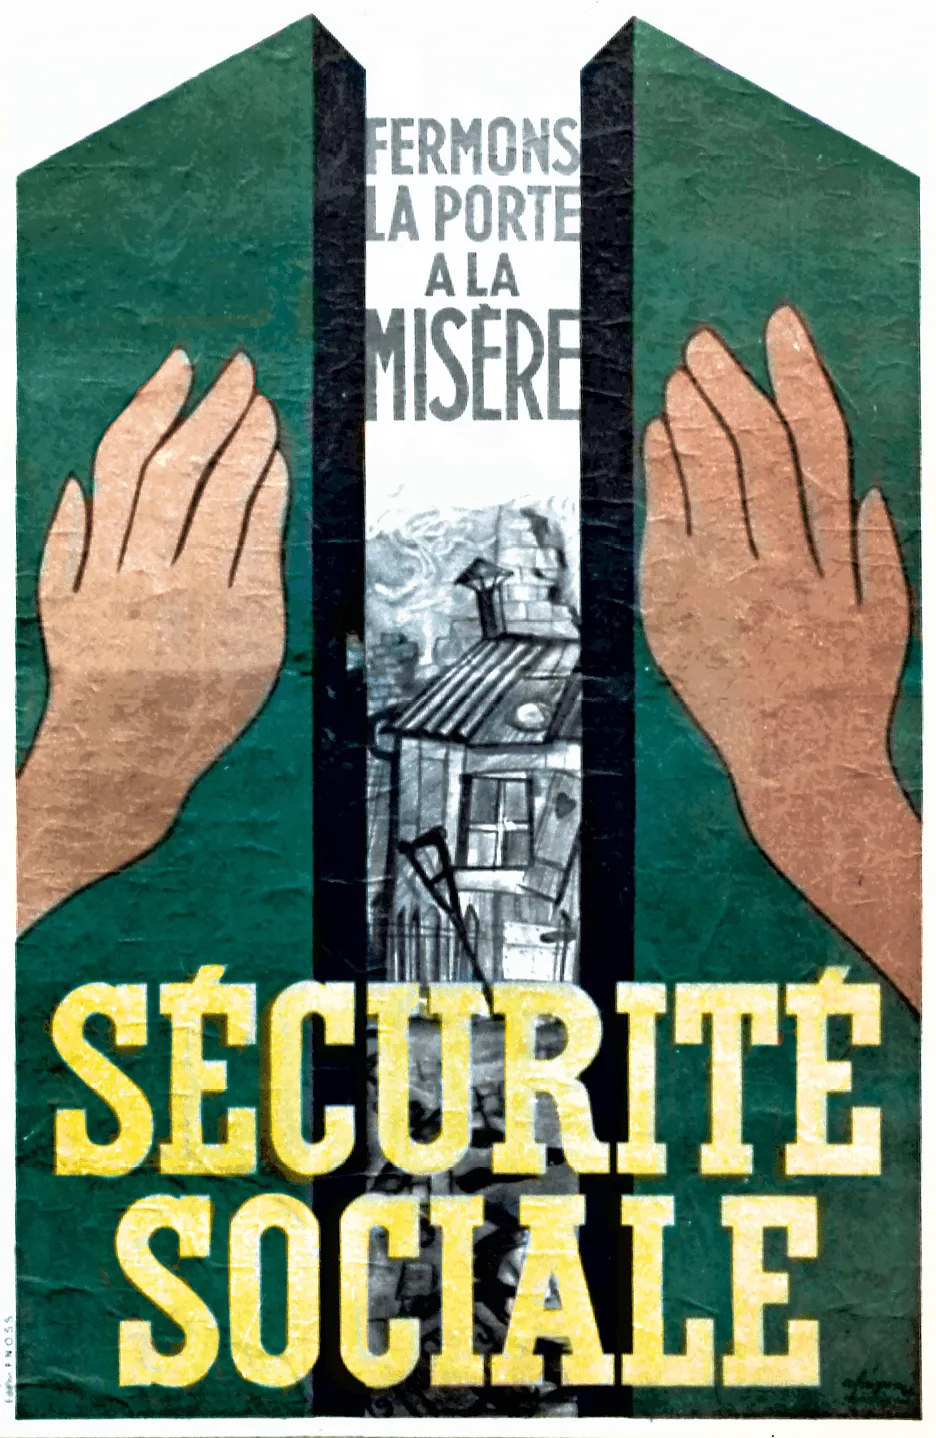 Affiche en faveur de la Sécurité sociale, 1945.